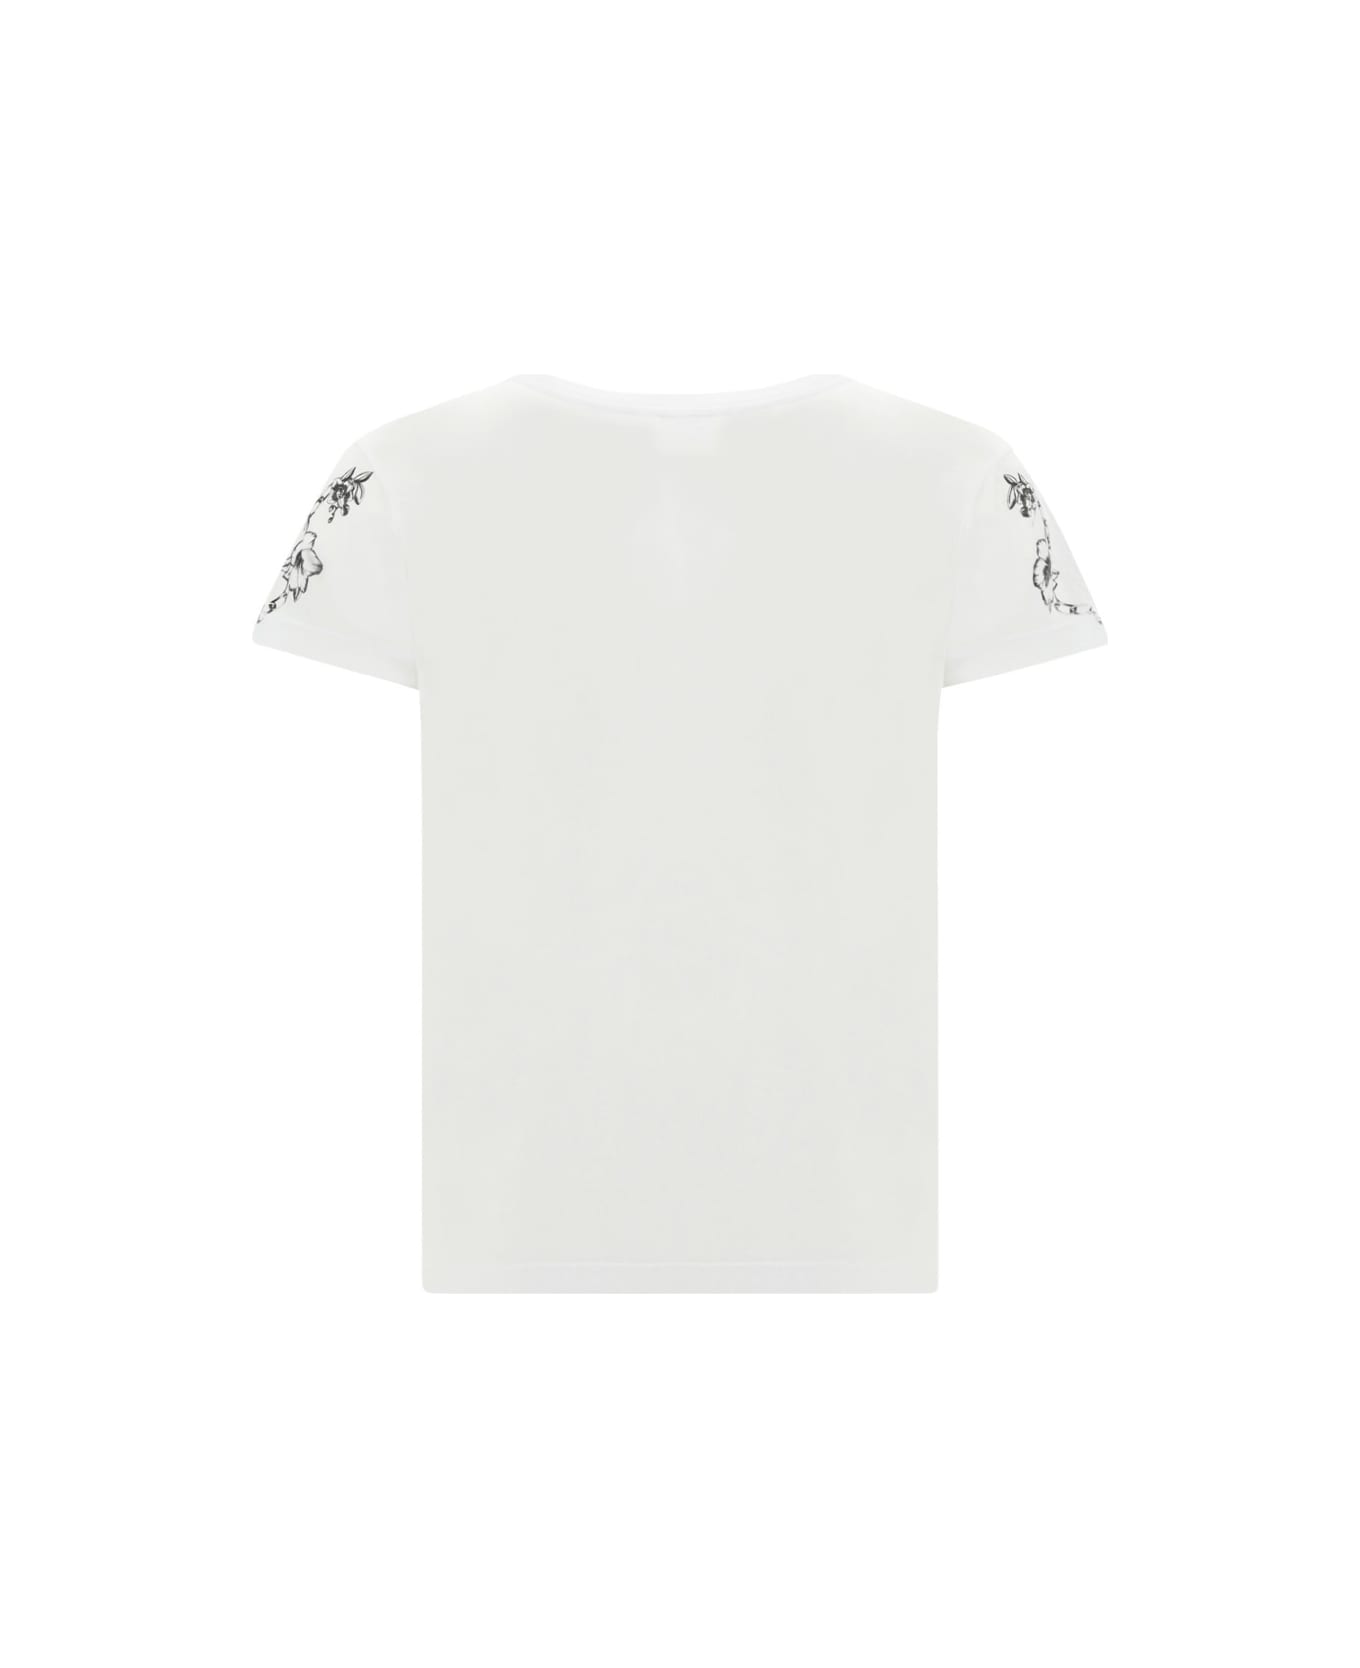 Pinko T-shirt - White